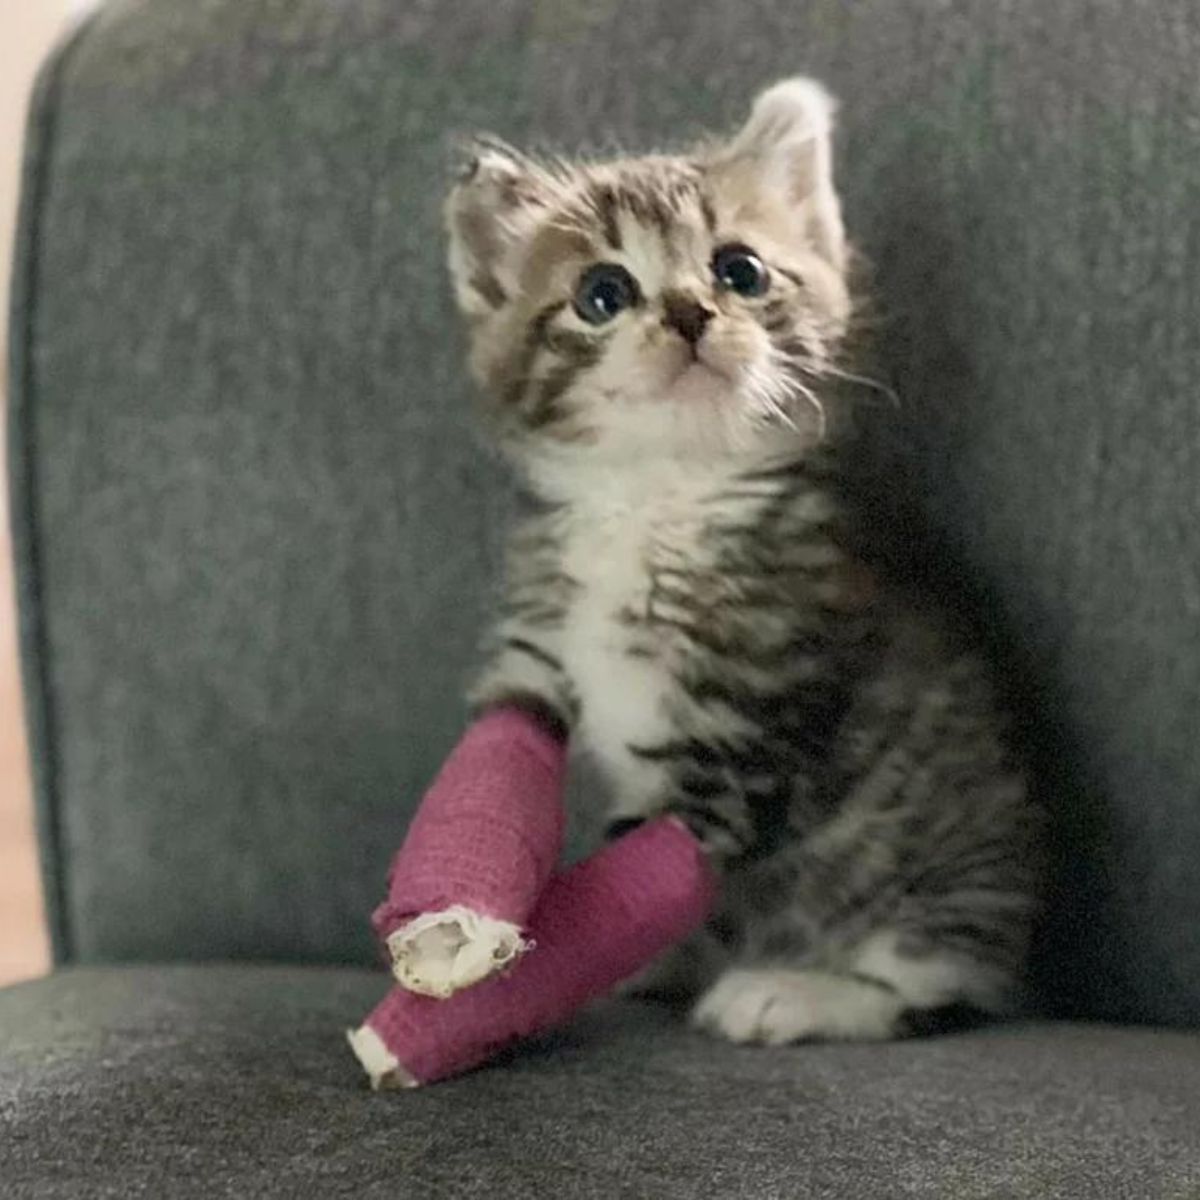 kitten wearing cast on front legs